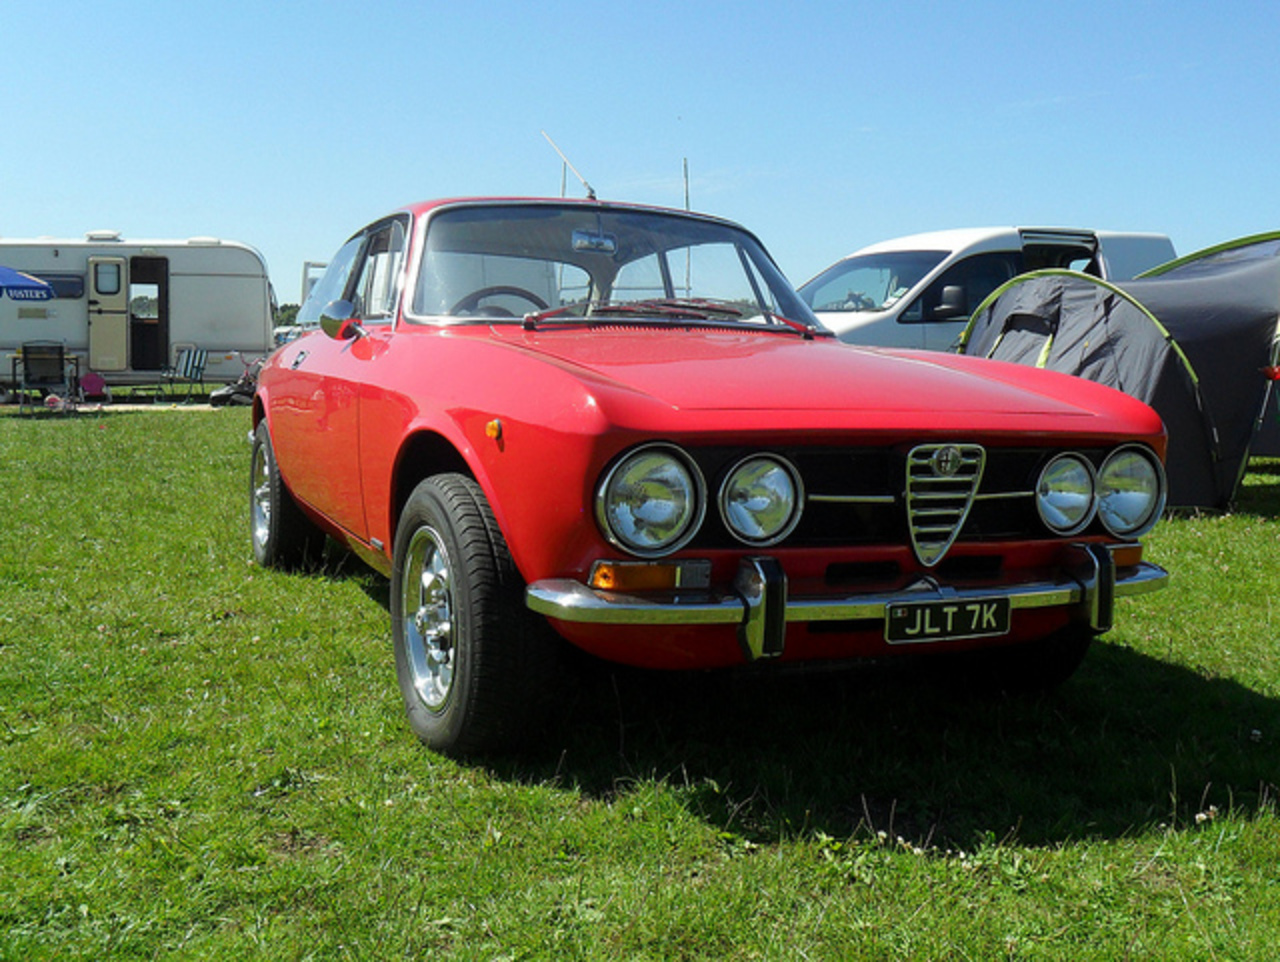 1971 Alfa Romeo 1300GT Junior JLT 7K | Flickr - Photo Sharing!